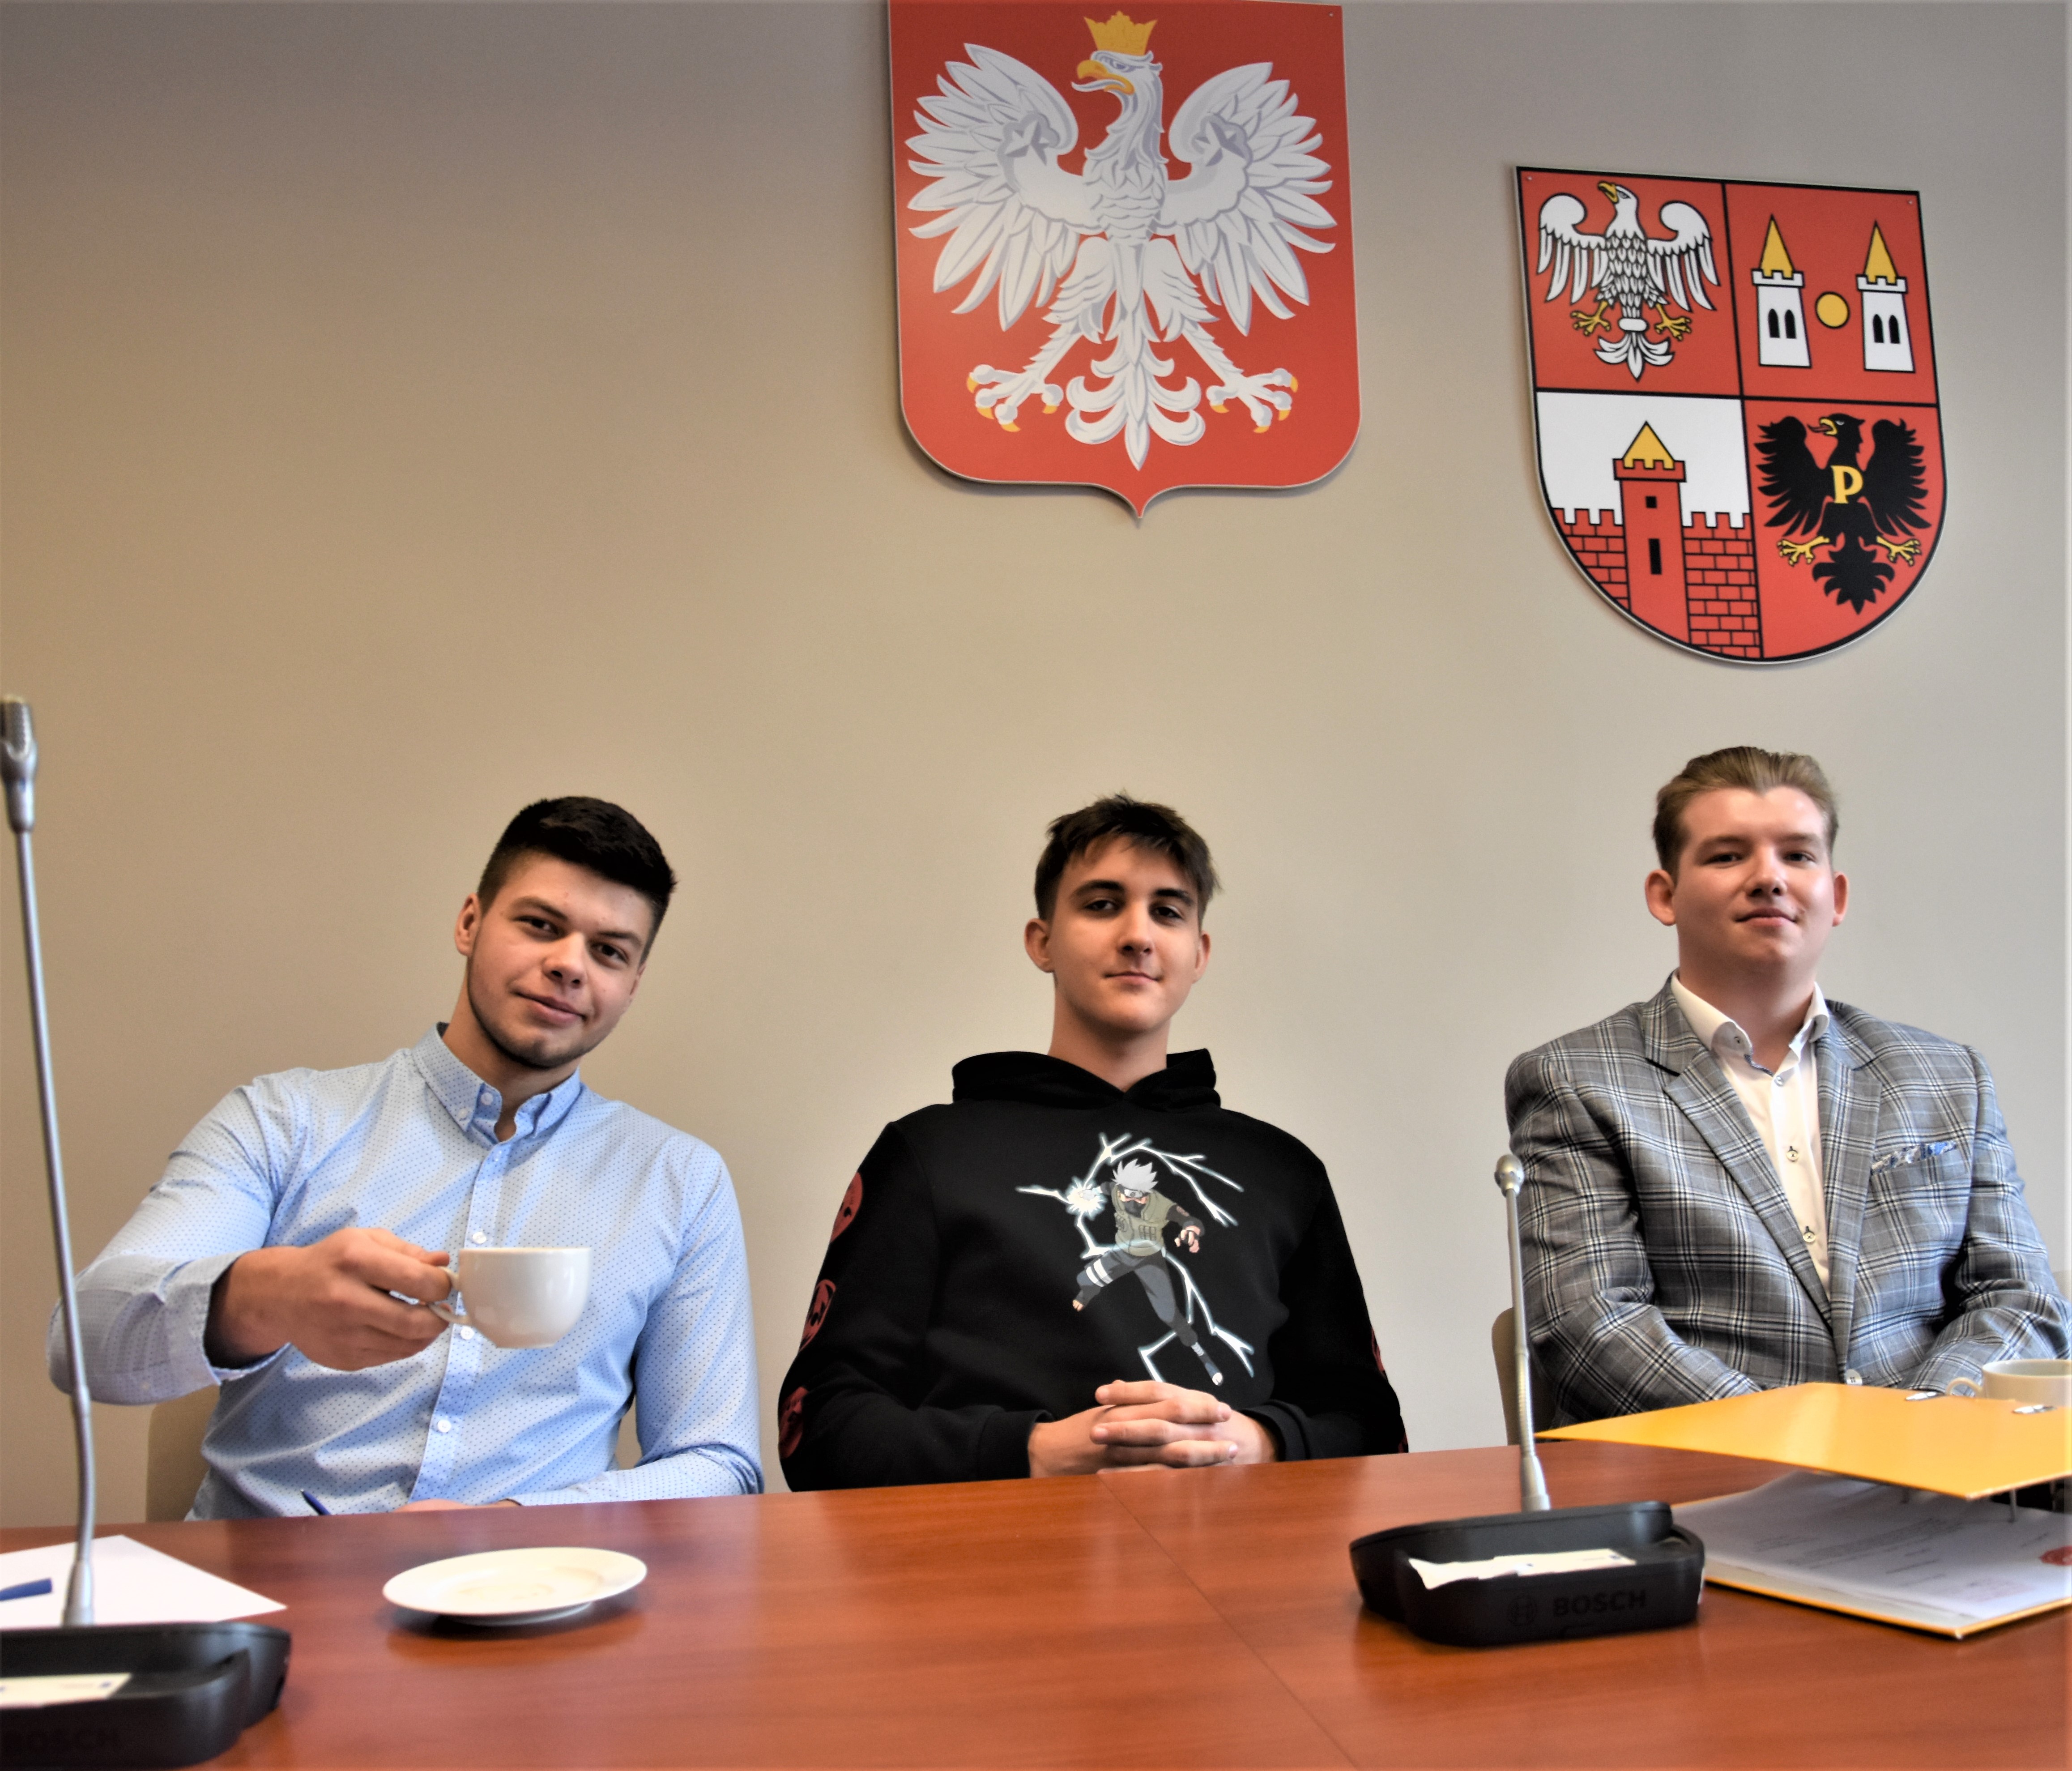 Radni Młodzieżowej Rady Powiatu Płońskiego podczas III Sesji.